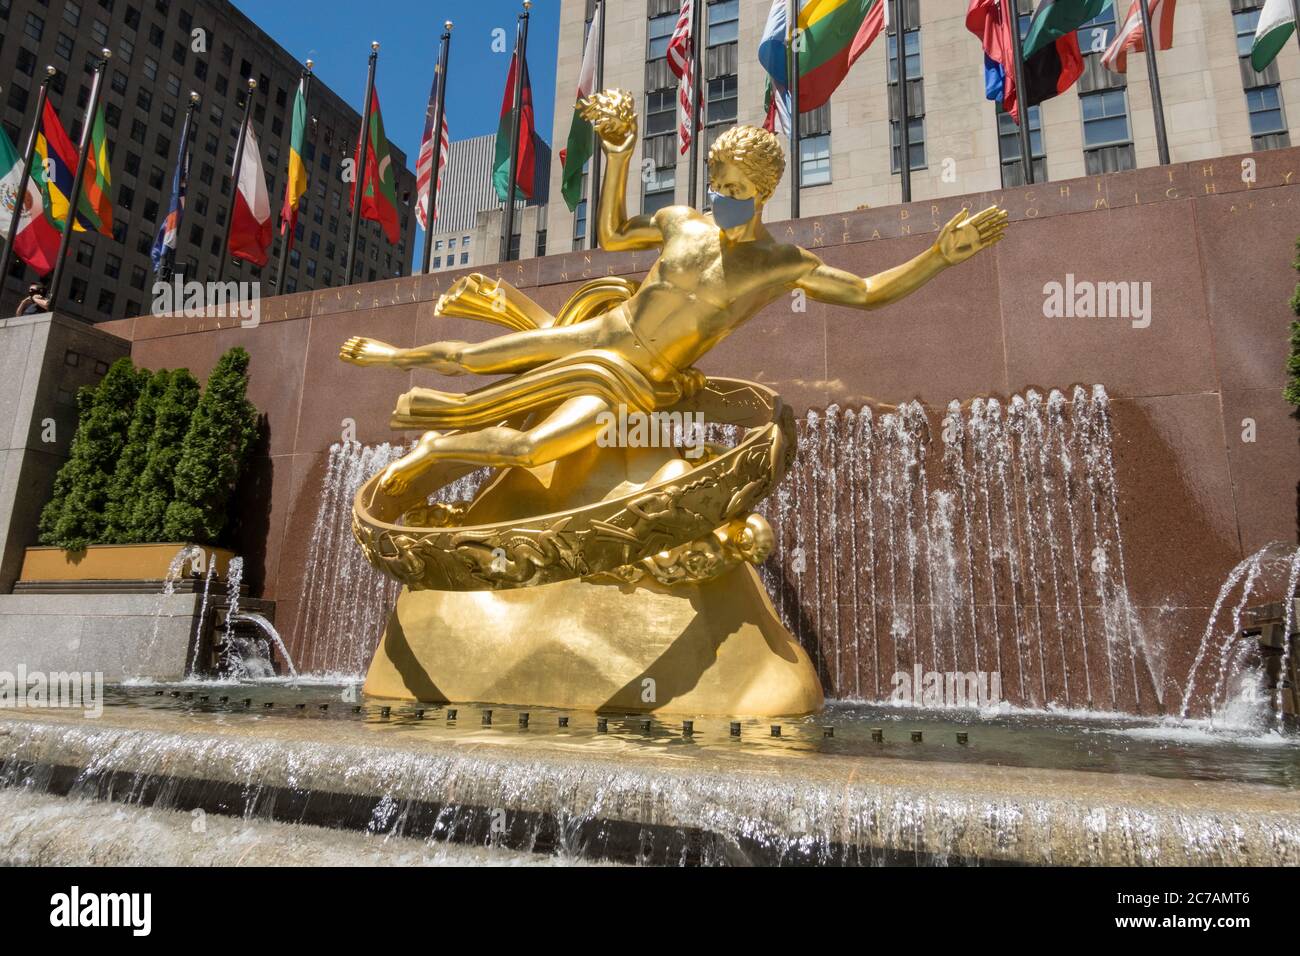 Prométhée au Rockefeller Center dispose d'un masque géant en raison de la pandémie du coronavirus, USA Banque D'Images